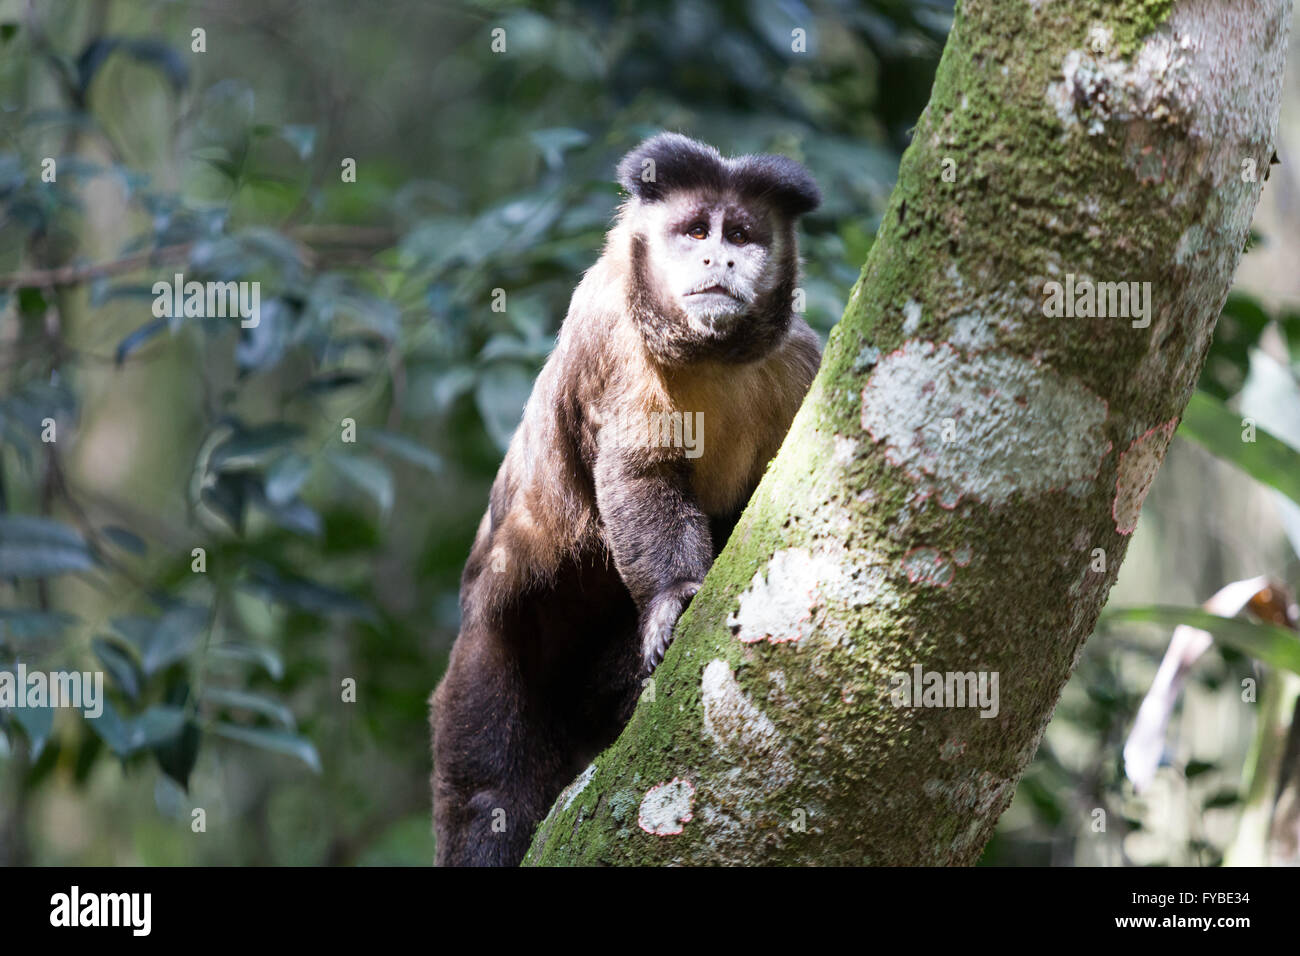 Macacos-prego (Sapajus nigritus) – informações